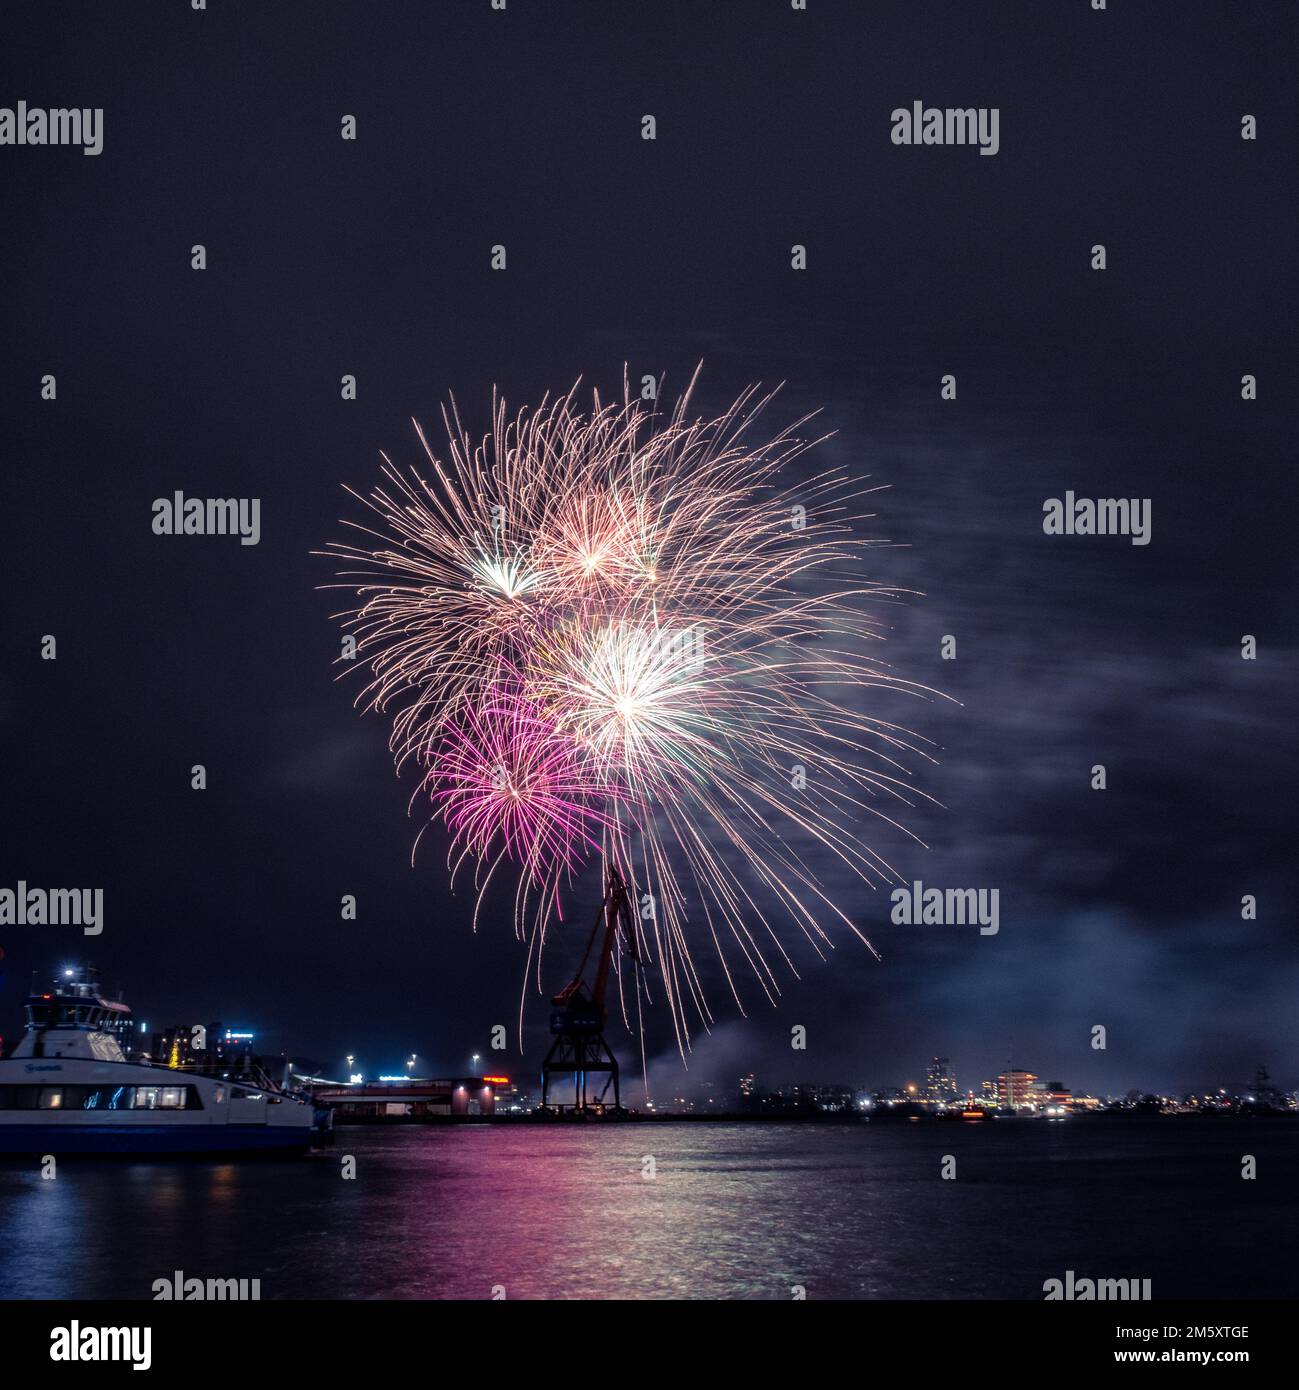 Fuochi d'artificio del nuovo anno a gothenburg svezia con vaporetto in primo piano e vecchie gru dai colori esplosivi Foto Stock